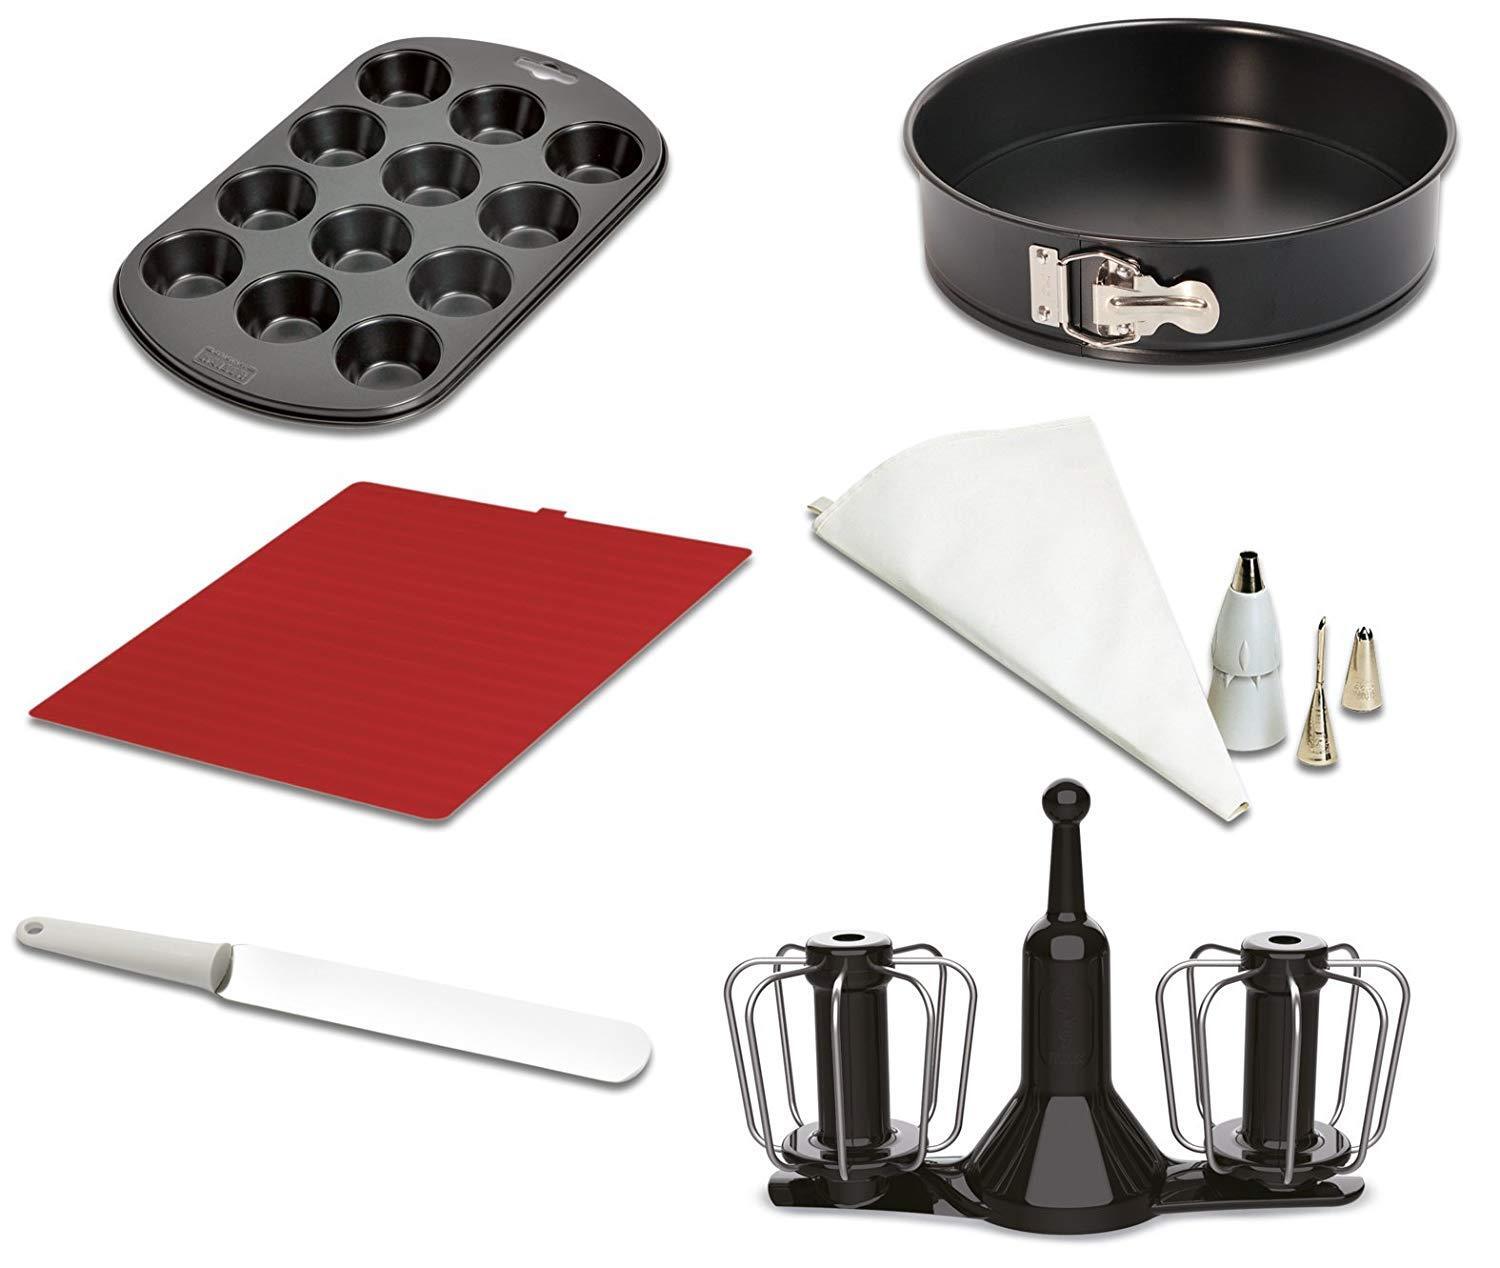 Moulinex nuovo accessorio kit pasticceria Cuisine Companion CuCo